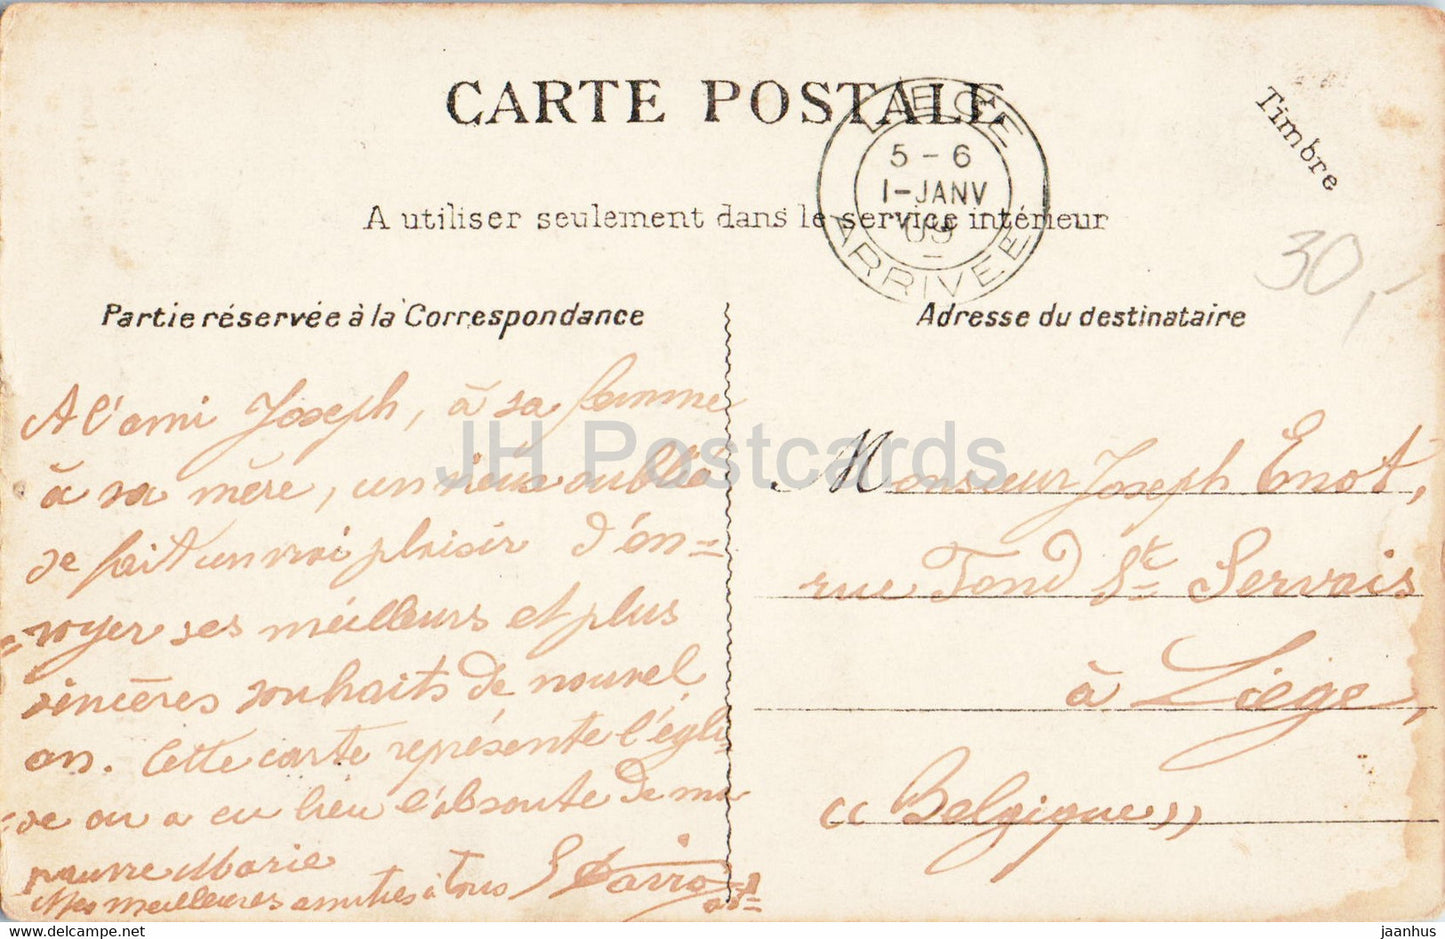 Montmartre - Eglise Saint Jean l'Evangéliste - église - 661 - carte postale ancienne - 1909 - France - utilisé